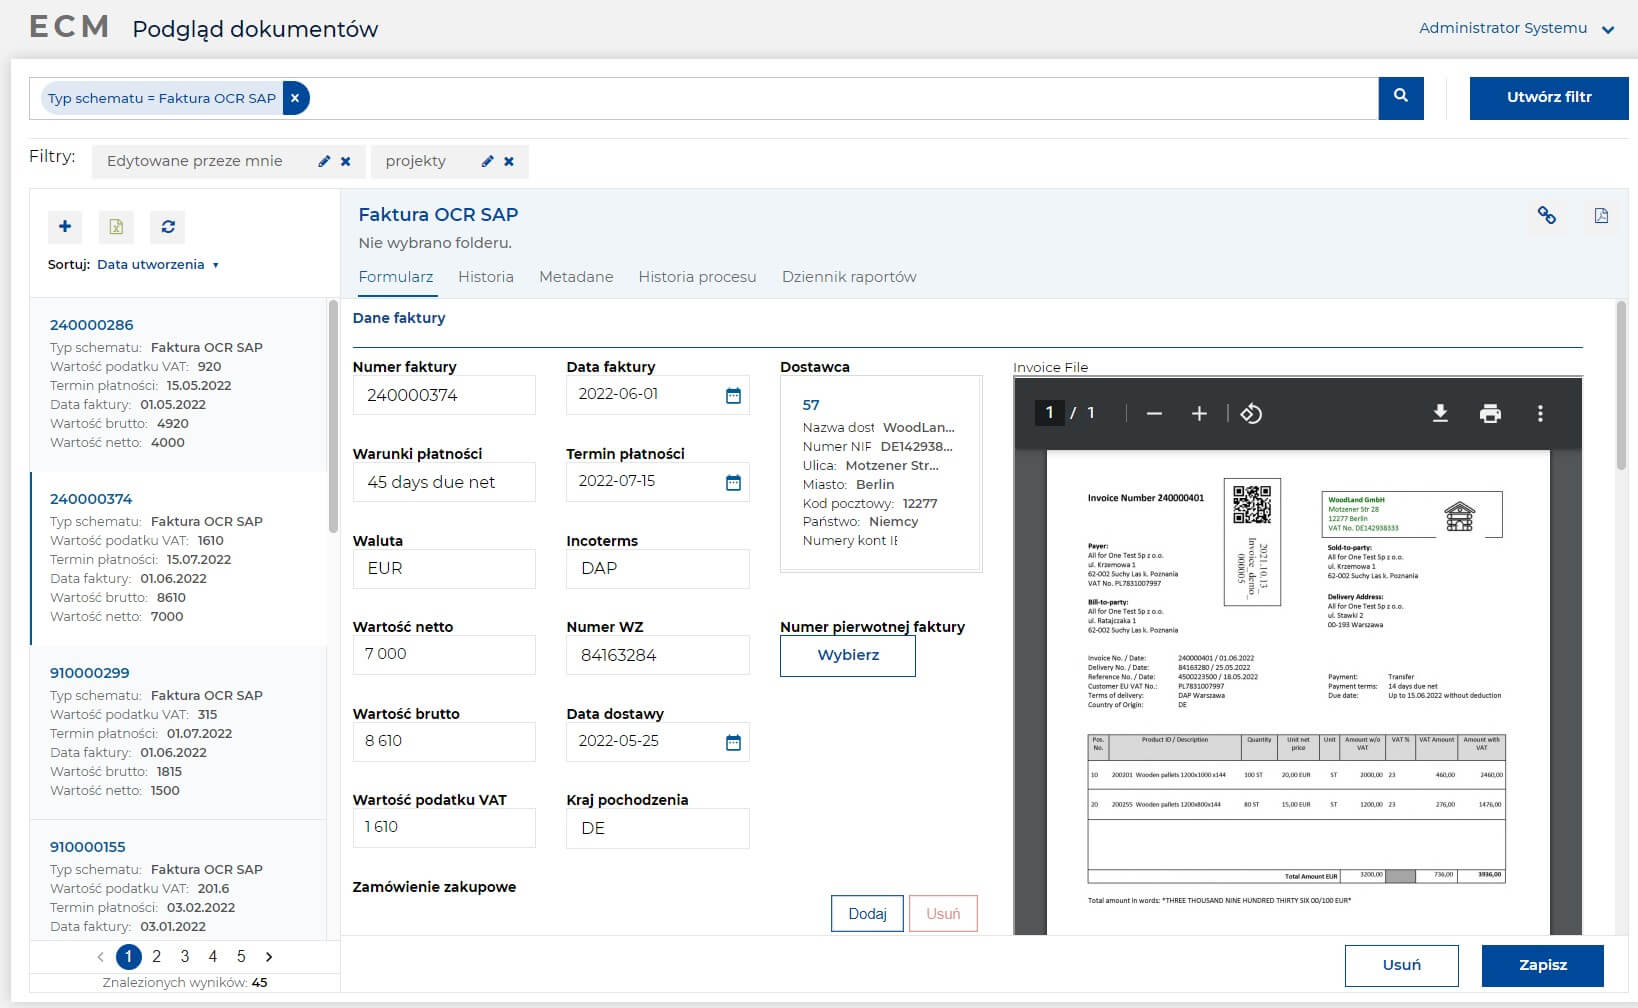 Obieg Faktur Zakupowych - wyszukiwanie dokumentów Faktur OCR SAP